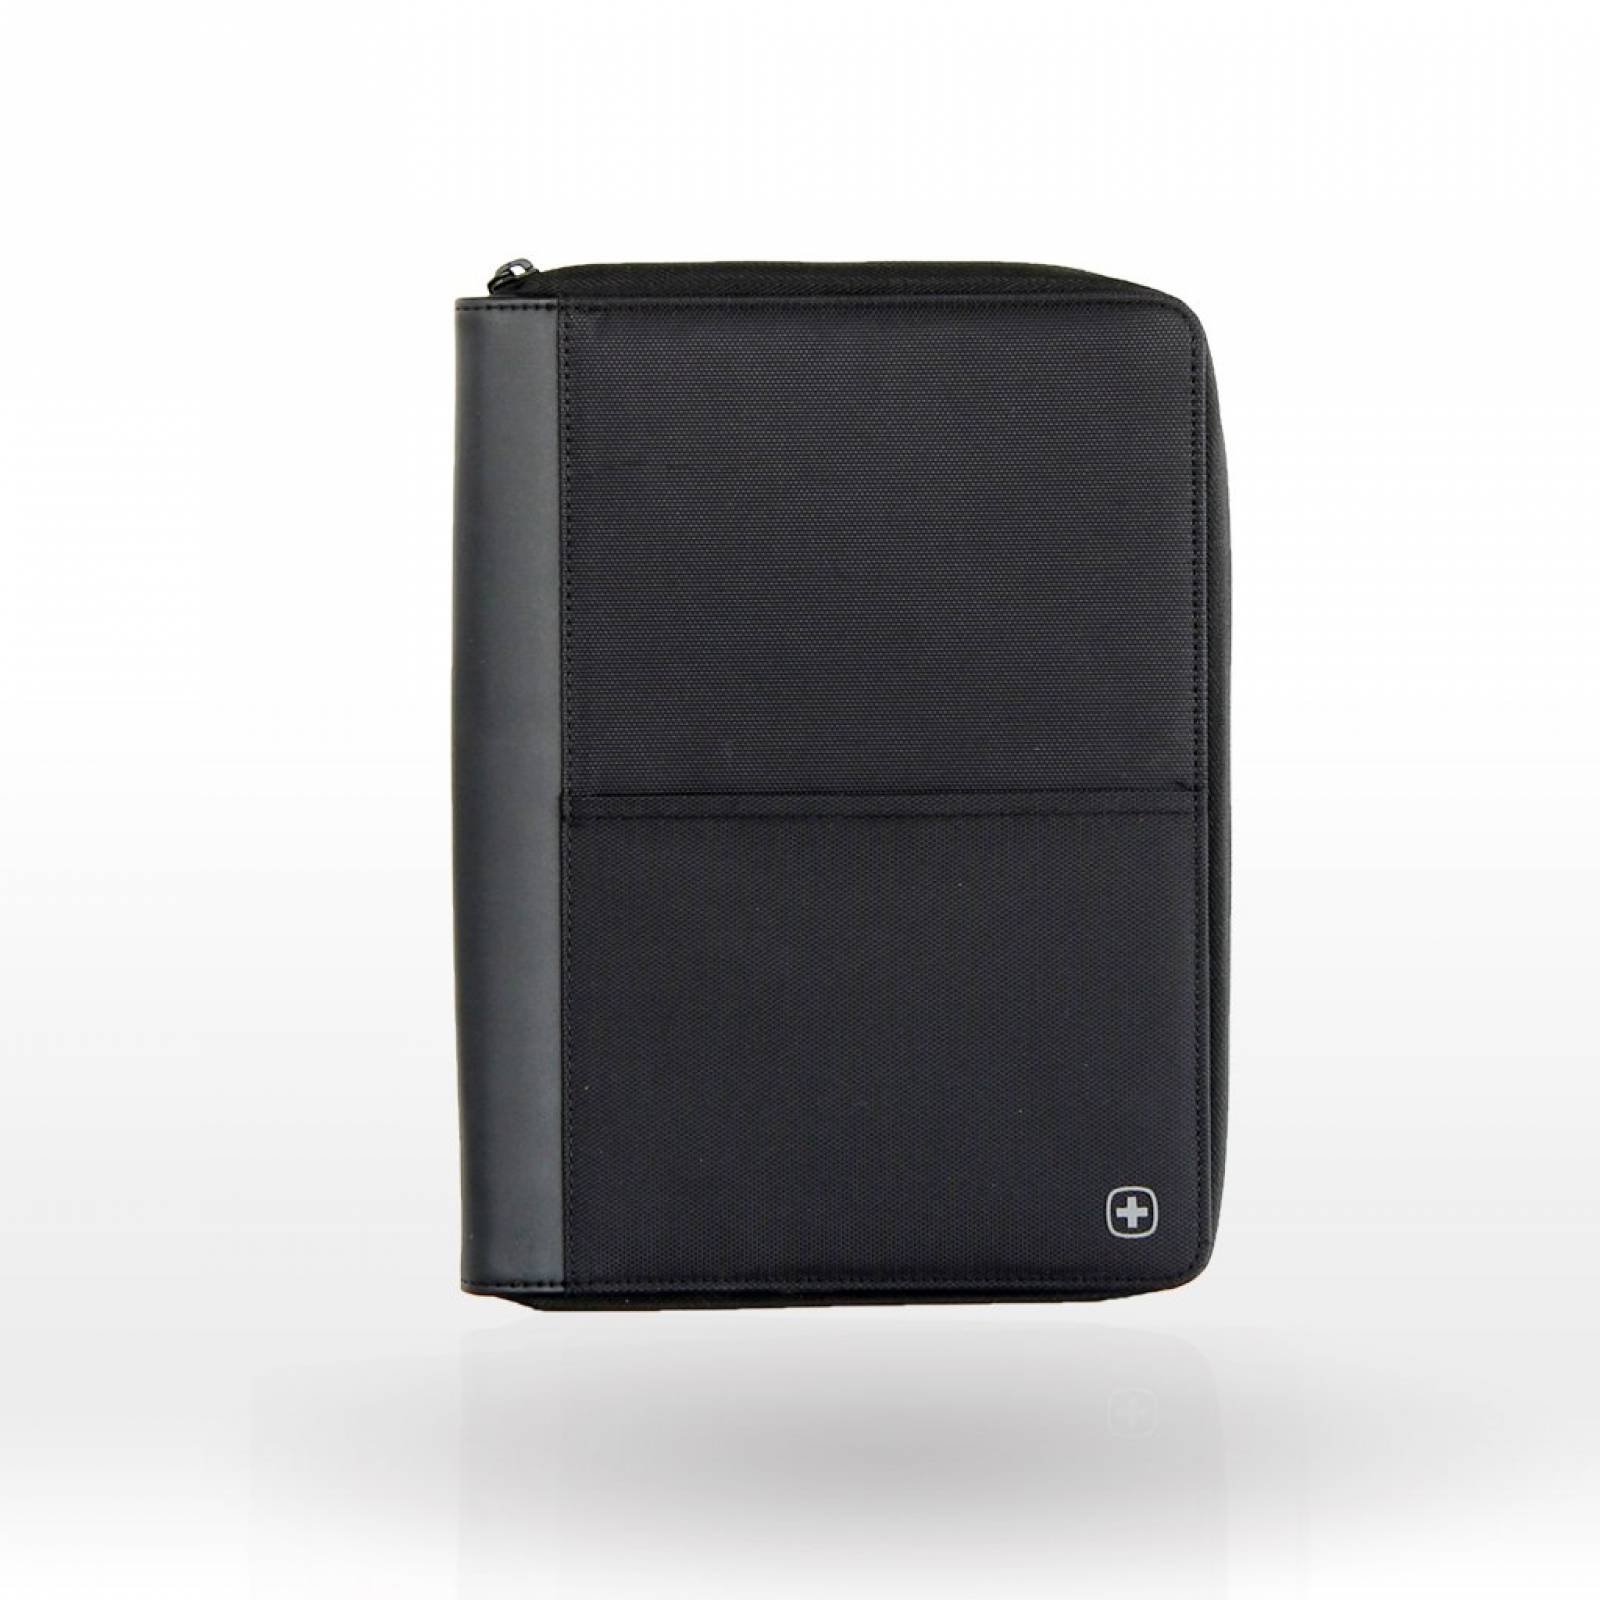 Porta tablet Interfase mini negra Swissgear